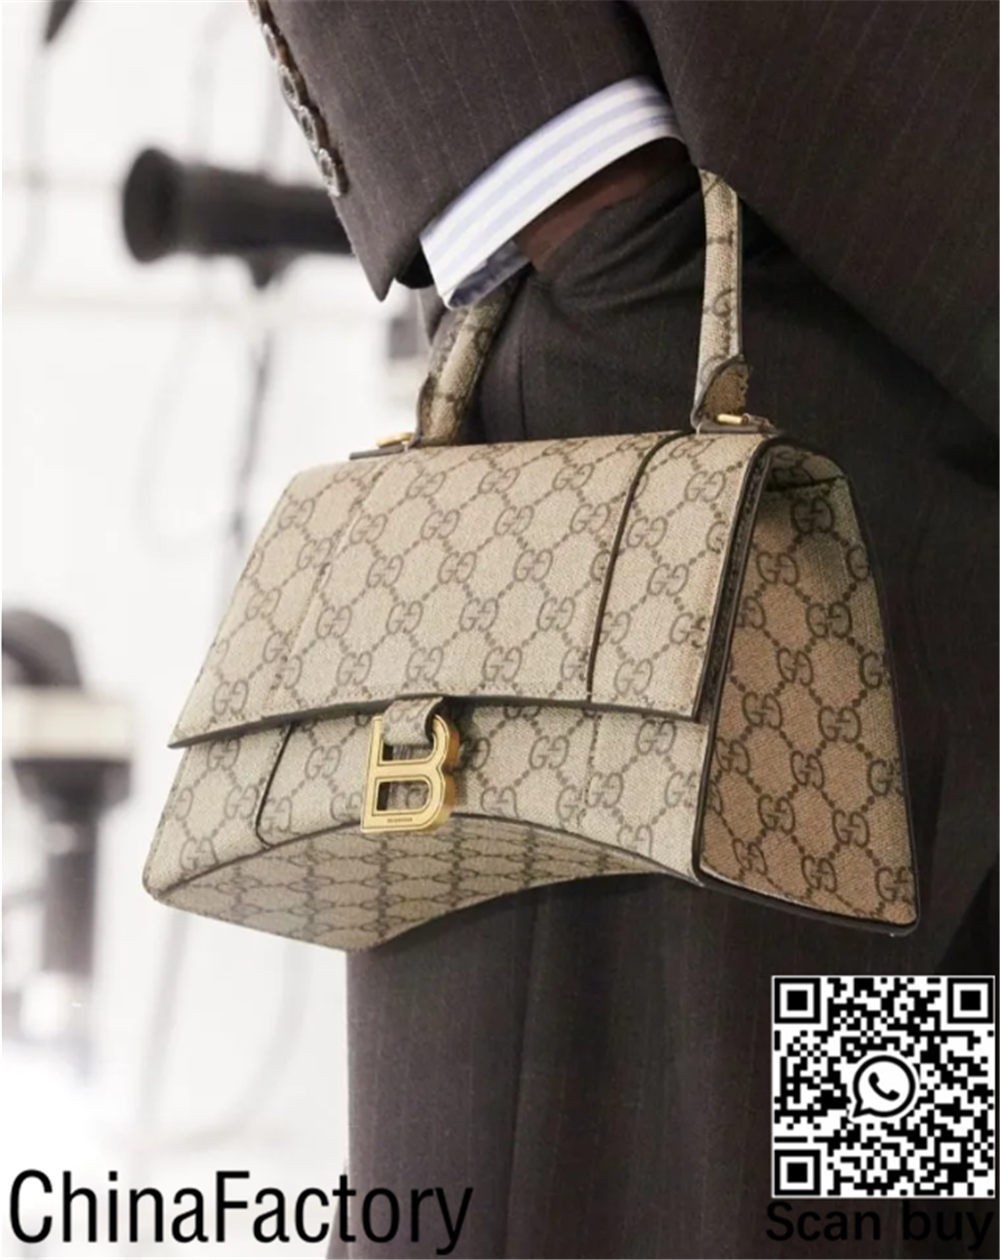 ТОП-6 сумок, які найбільше варто купувати! (Нове видання 2022 року) - Інтернет-магазин підробленої сумки Louis Vuitton найкращої якості, копія дизайнерської сумки ru